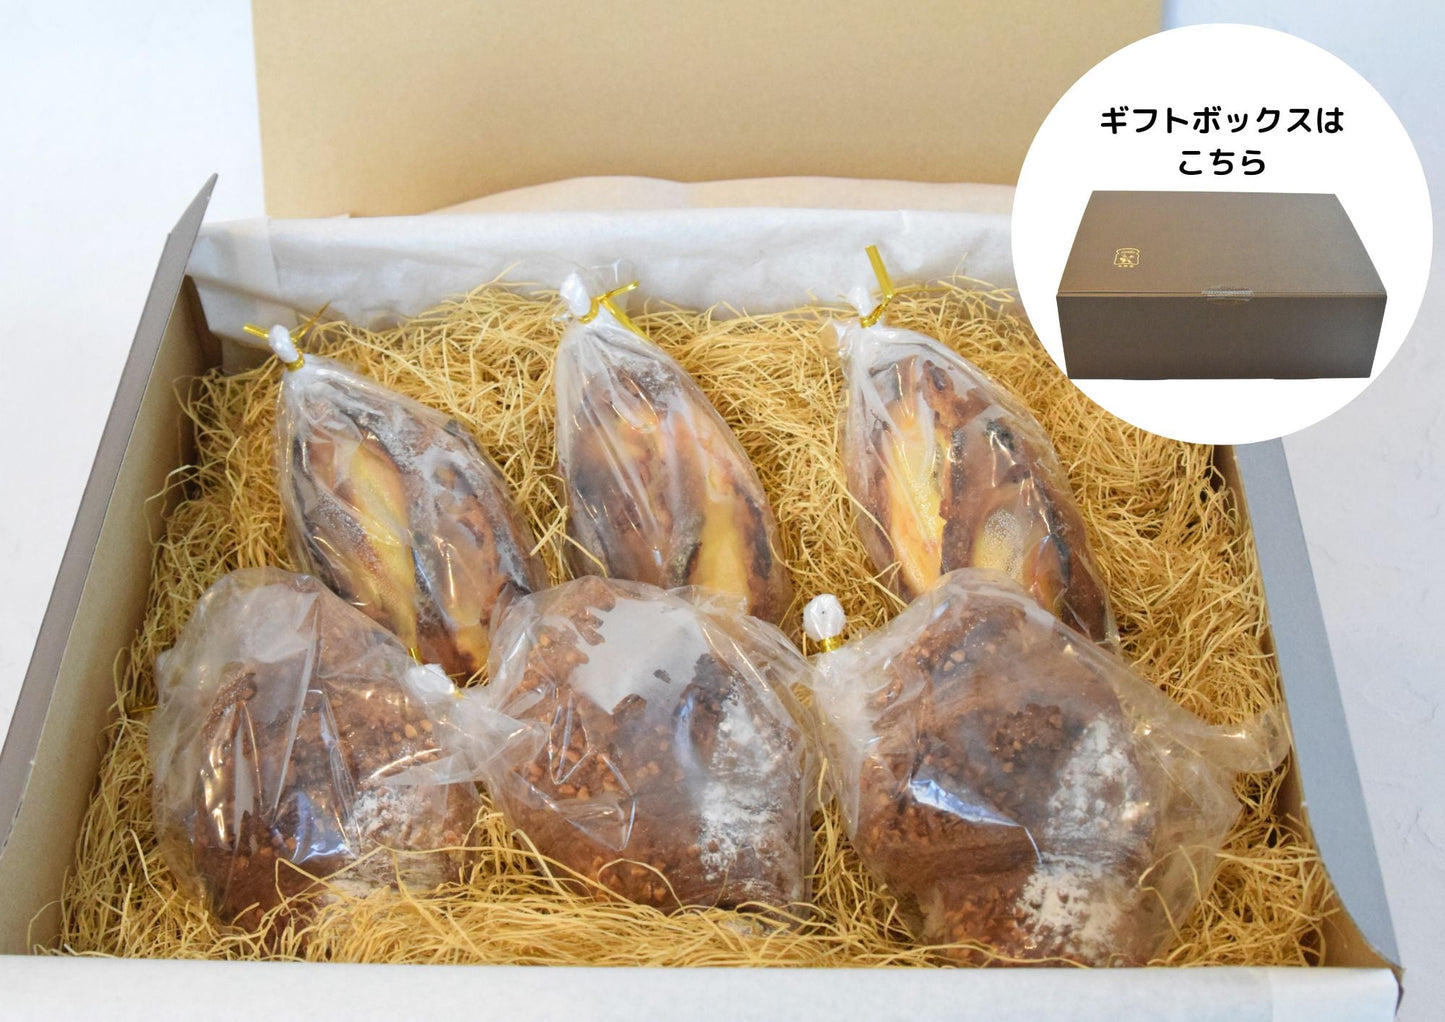 【冷凍】大人のくつろぎｾｯﾄ人気パン2種類入り - 浅野屋オンラインショップ